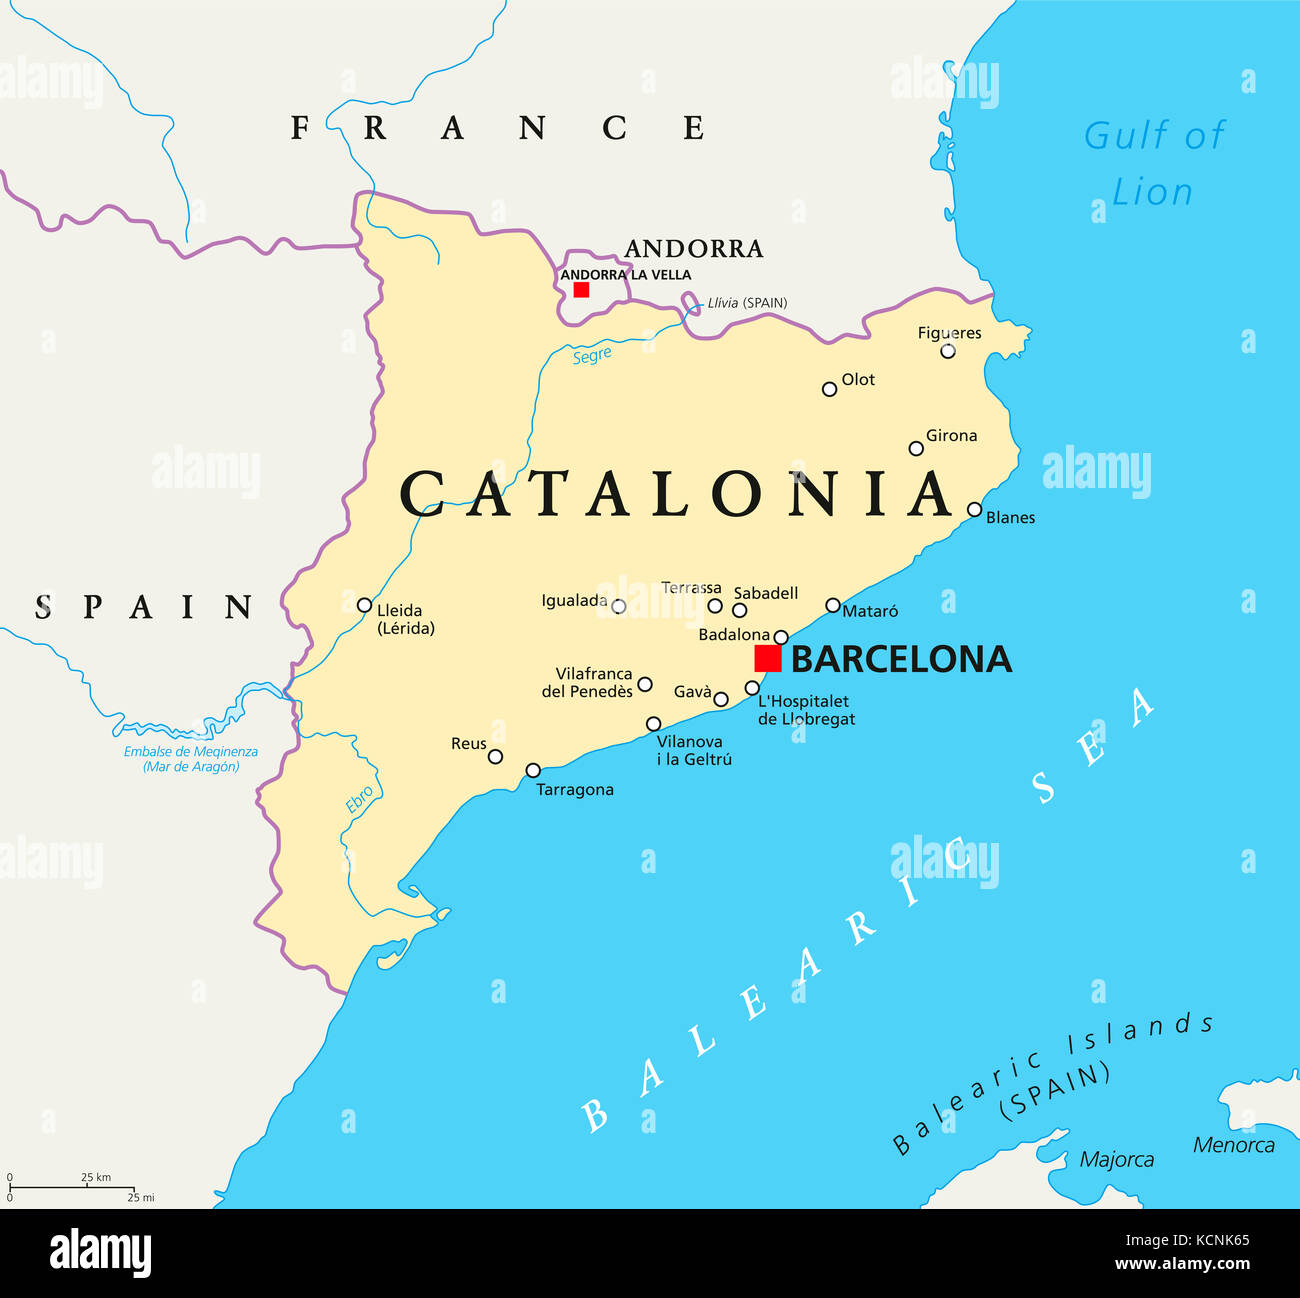 Katalonien politische Karte mit der Hauptstadt Barcelona, Grenzen und wichtige Städte. autonome Gemeinschaft Spaniens auf der iberischen Halbinsel. Abbildung. Stockfoto